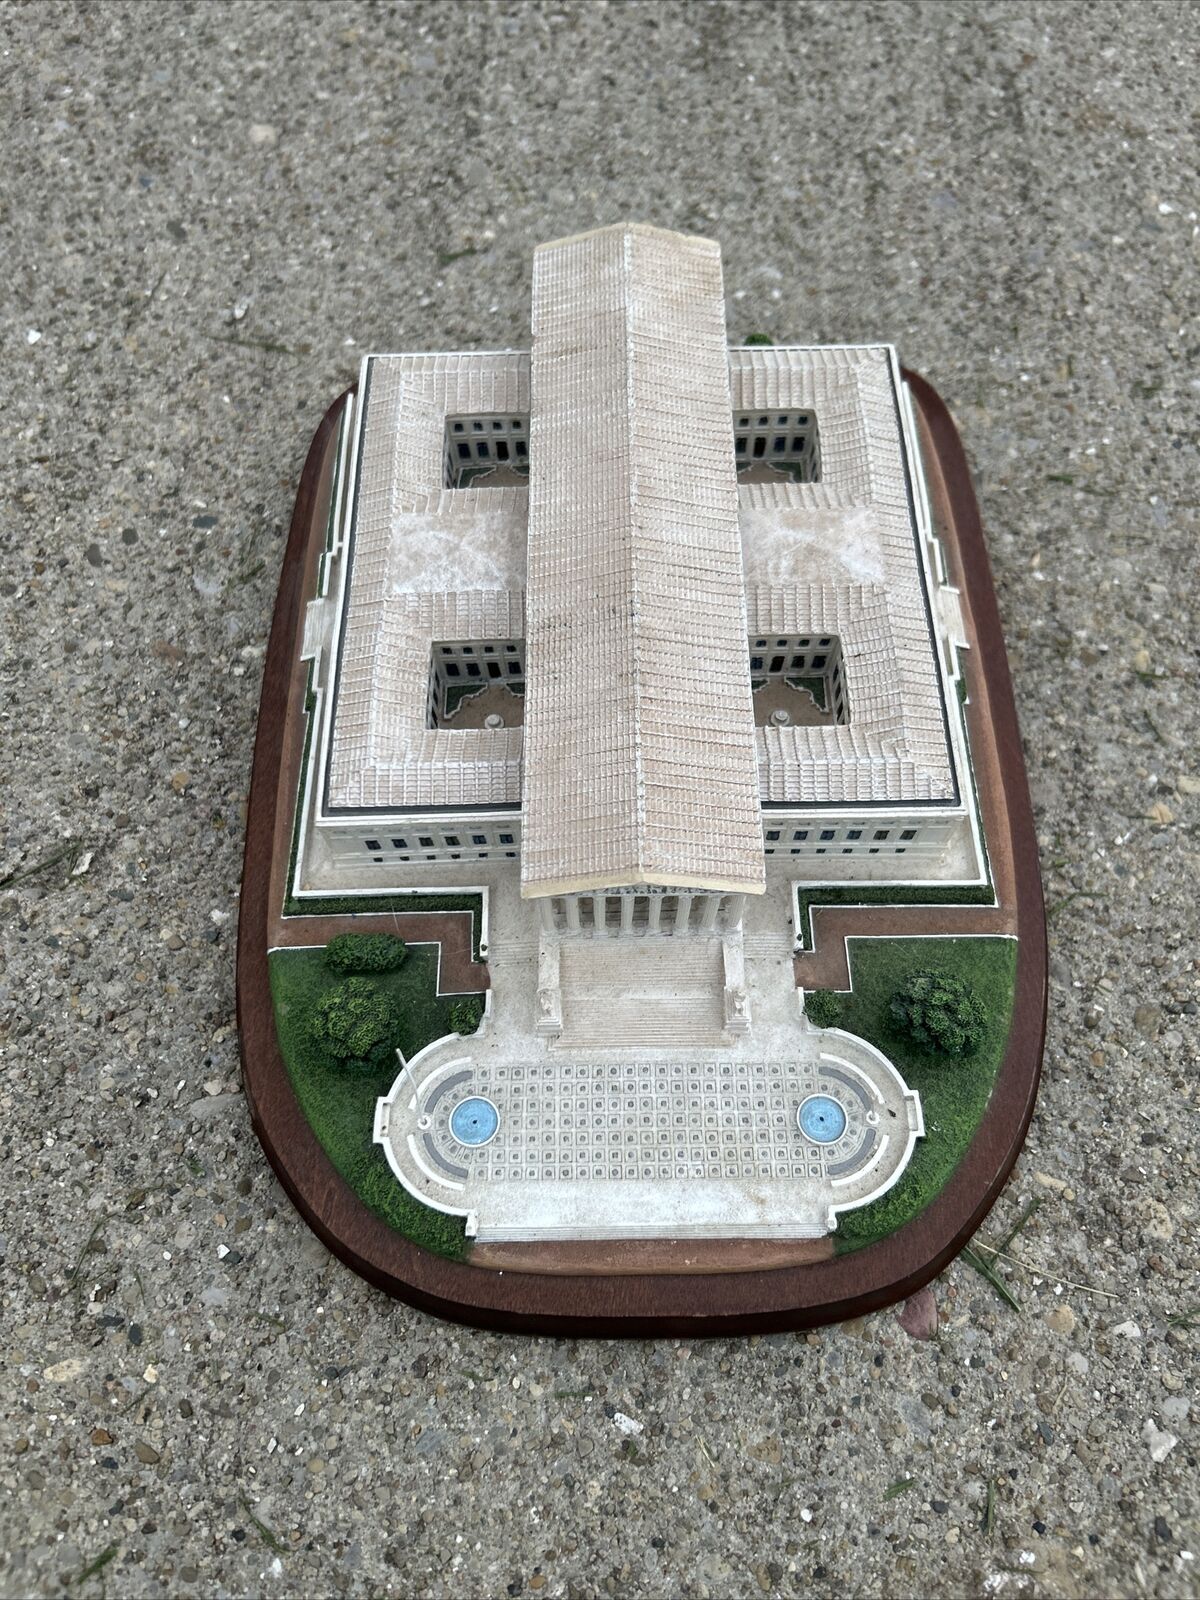 The Danbury Mint Sculpture US Supreme Court Building Washington DC